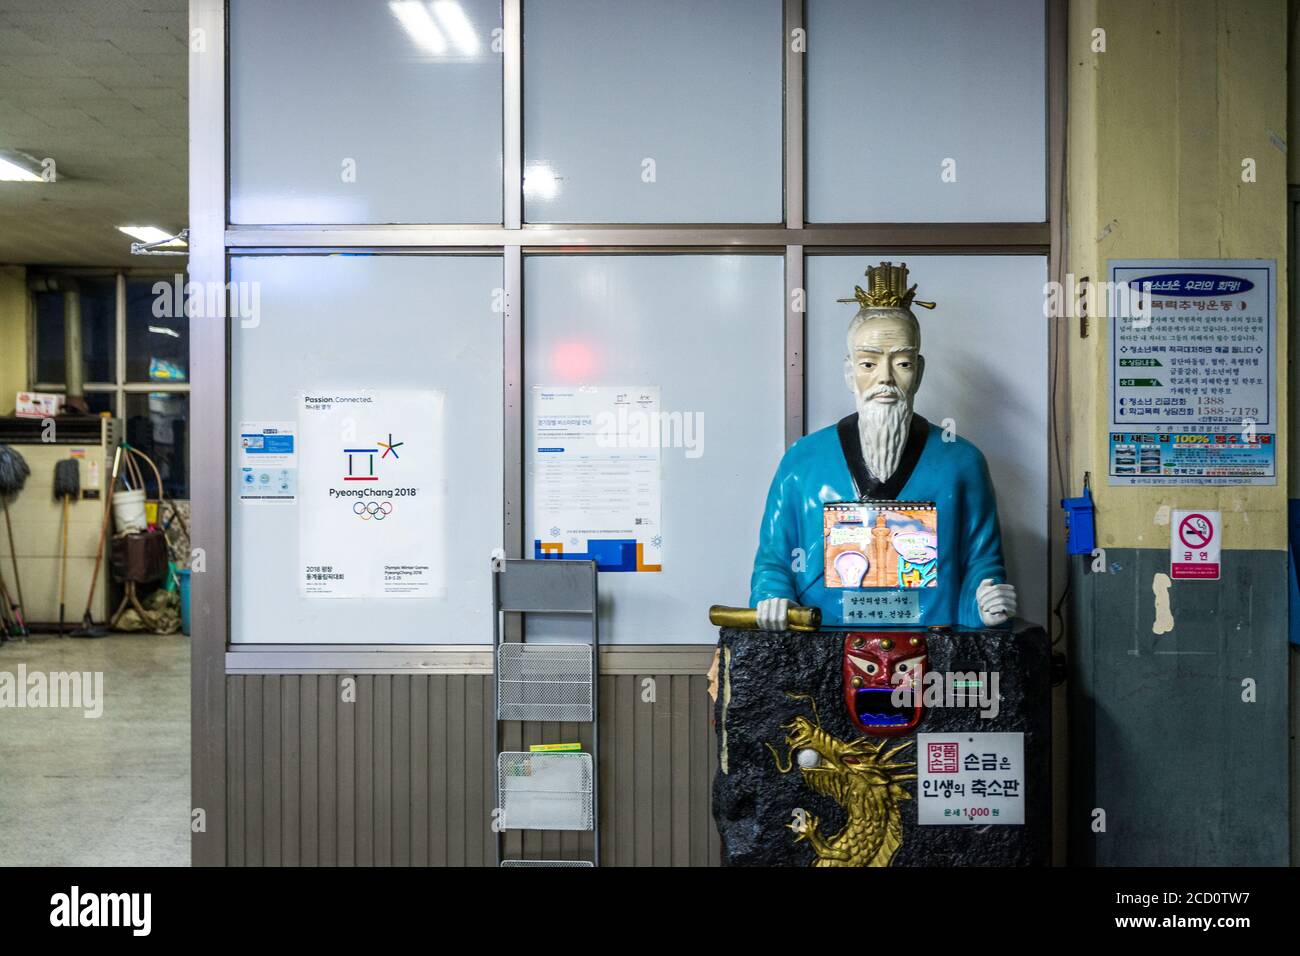 Daegu, Corée du Sud - UNE fortune-teller, ou lecteur de paume dans une forme de vieux ascétique. Ancien intérieur de l'arrêt de bus Daegu Bukbu Intercity. Banque D'Images